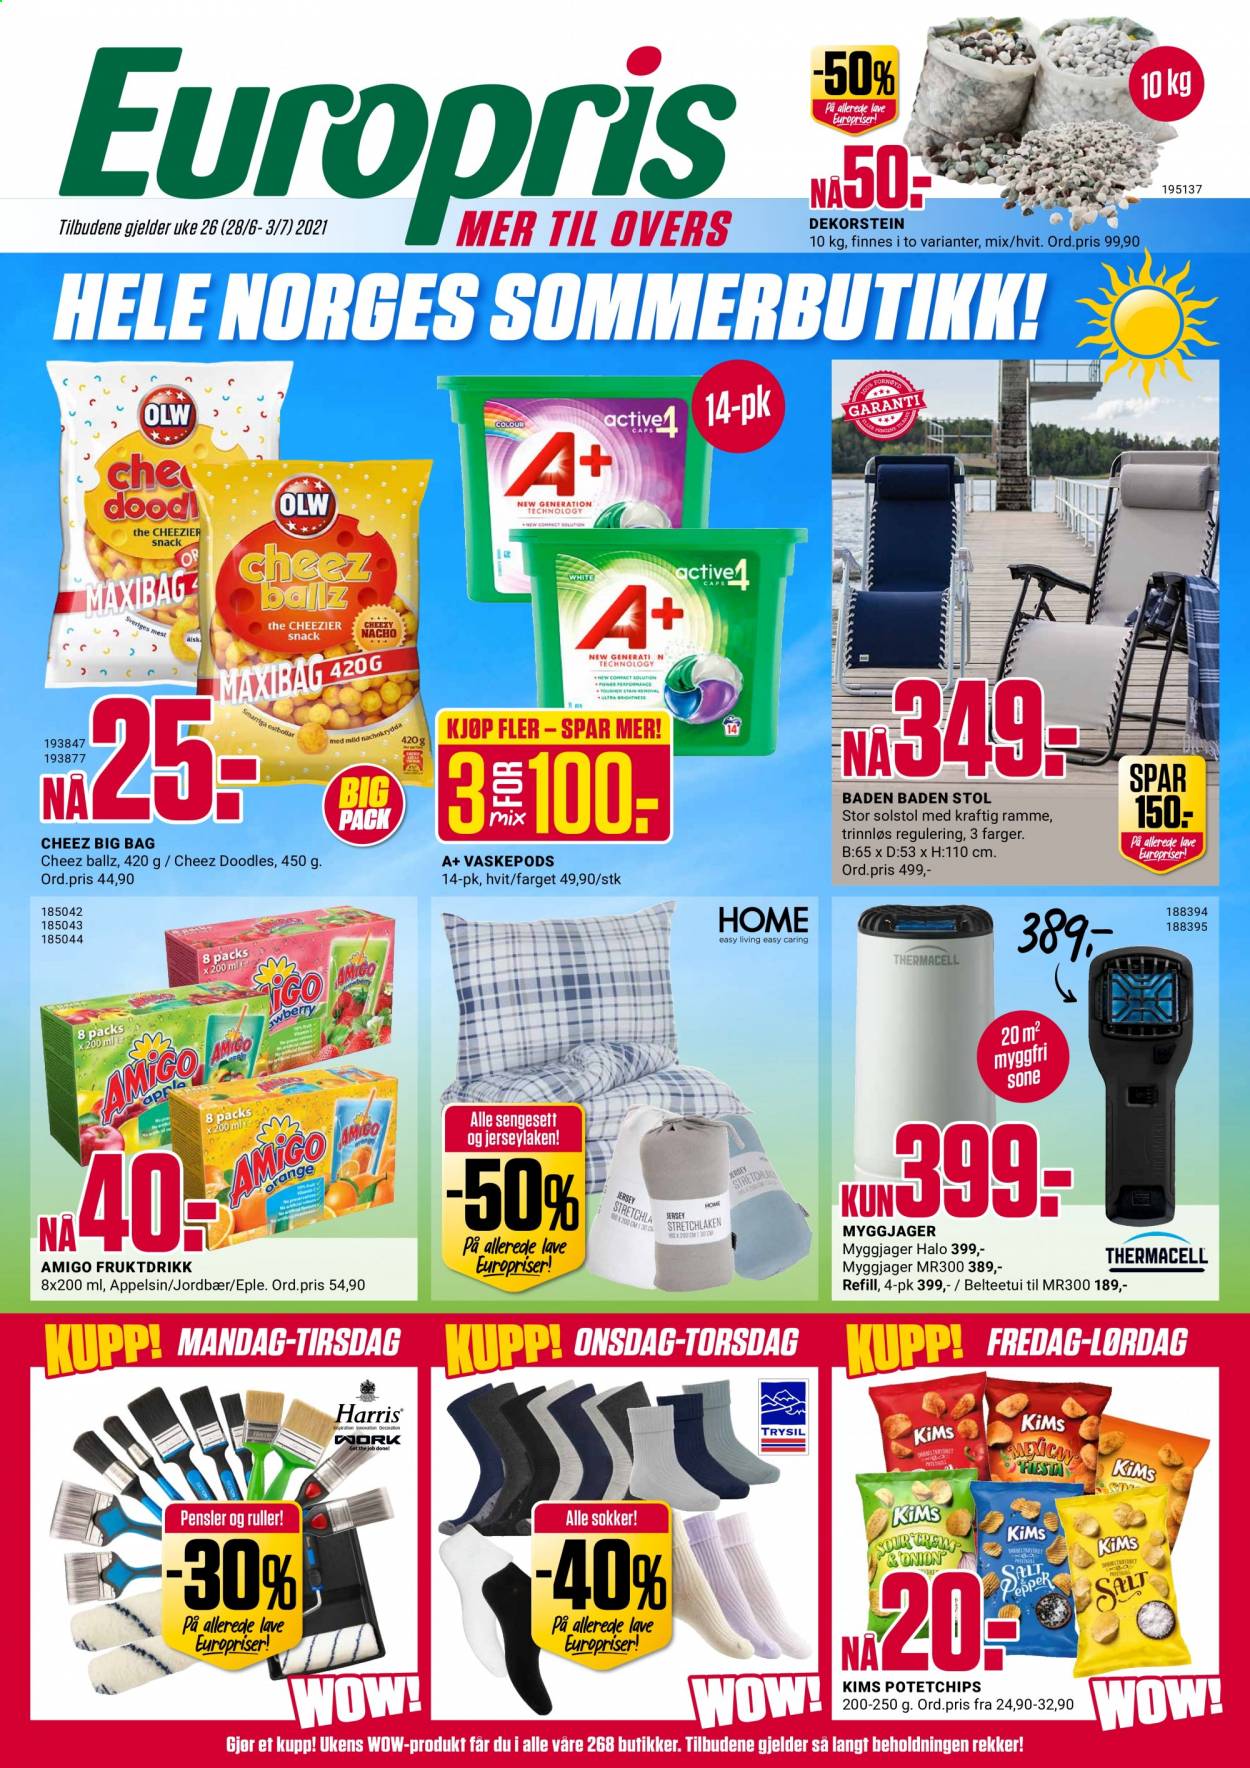 thumbnail - Kundeavis Europris - 28.6.2021 - 3.7.2021 - Produkter fra tilbudsaviser - jordbær, nachochips, potetchips, vaskepods, myggjager, stol, sokker. Side 1.